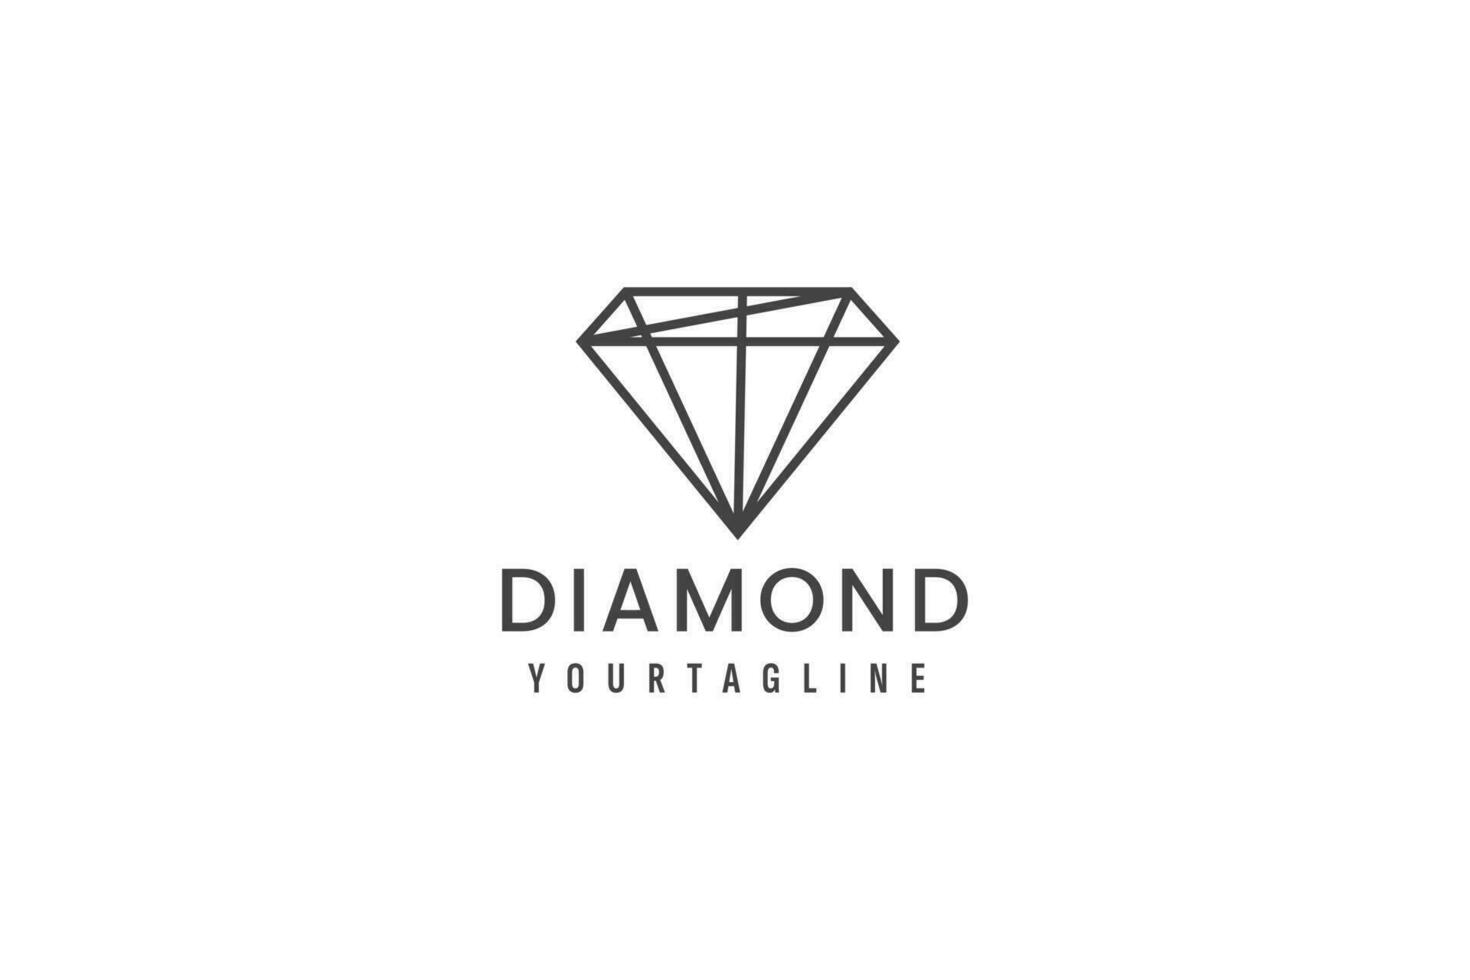 diamante logo vector icono ilustración